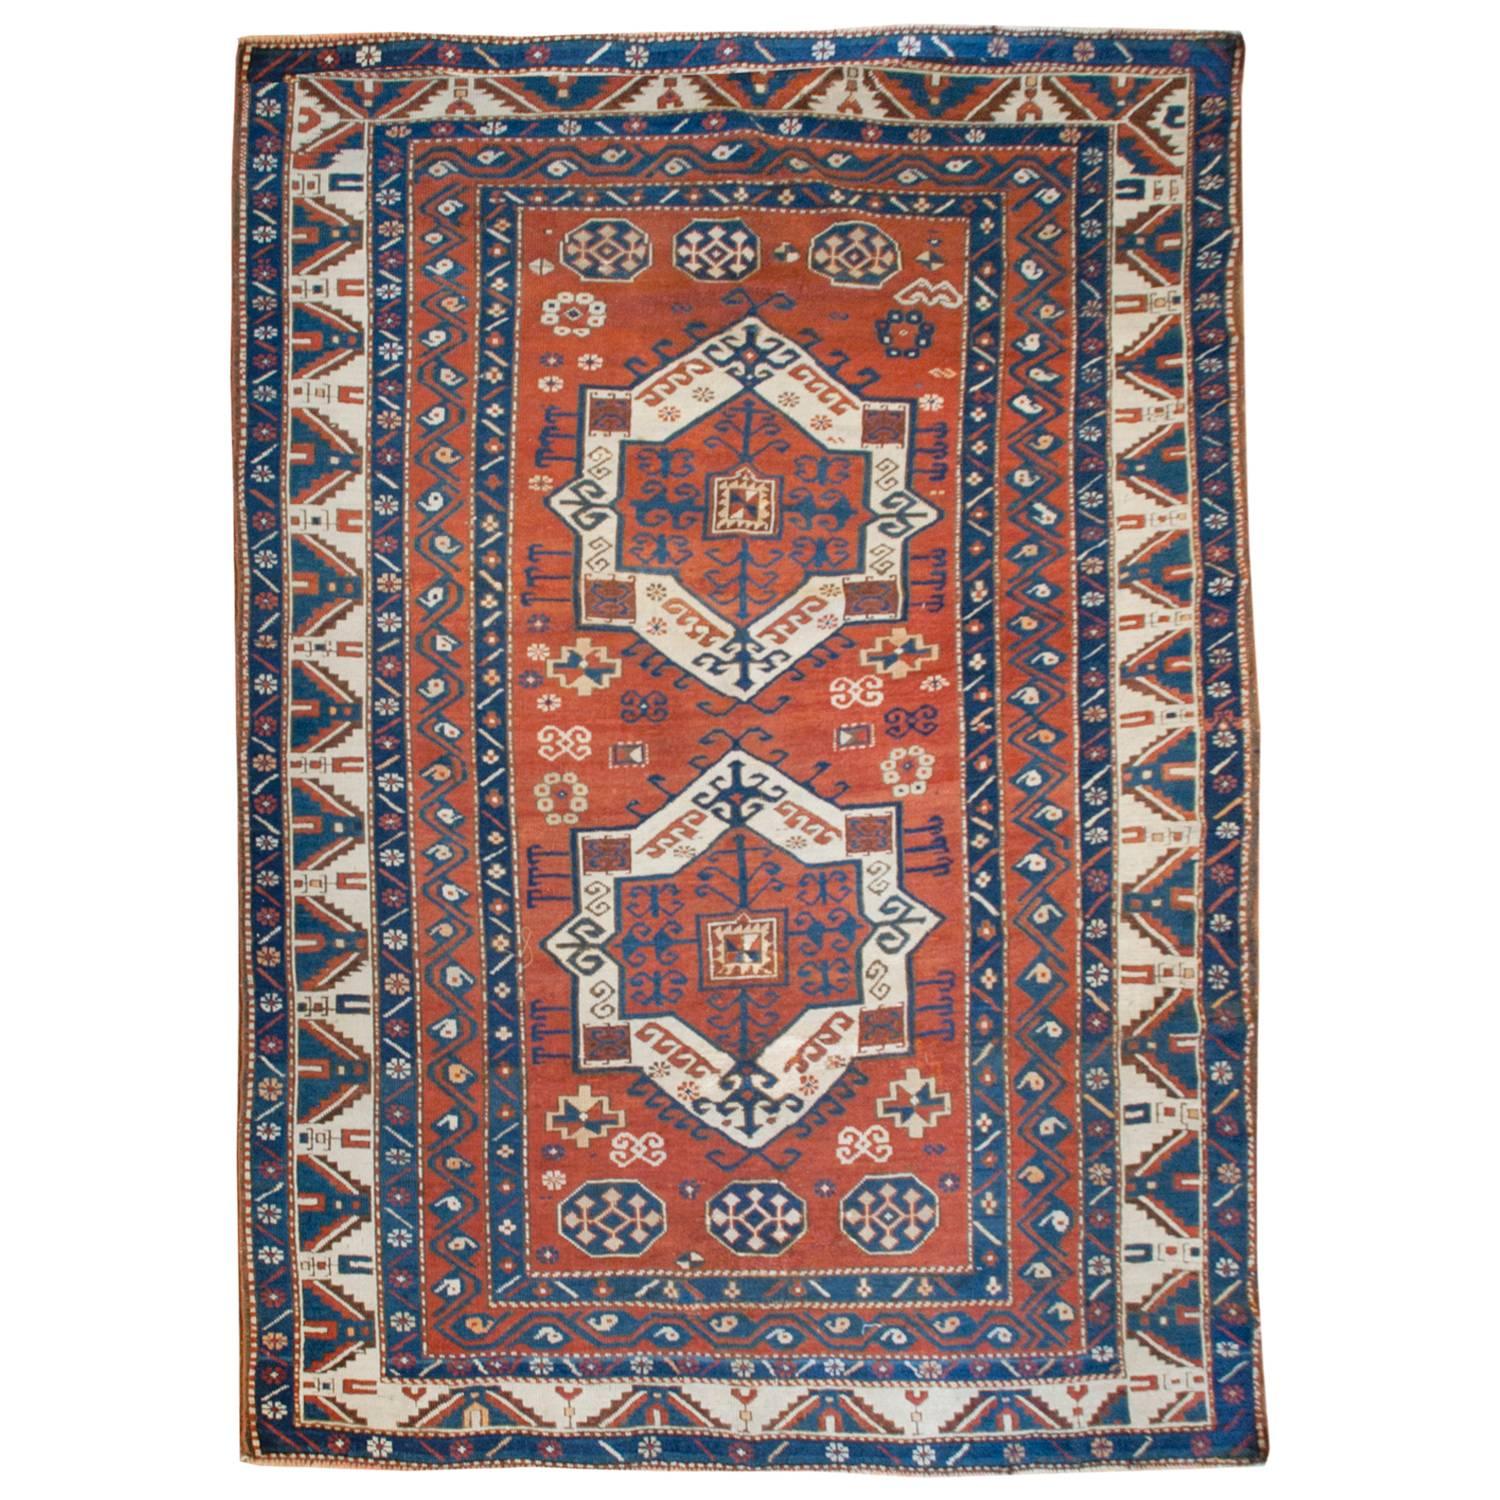 Intéressant tapis Fachralo Kazak du 19ème siècle